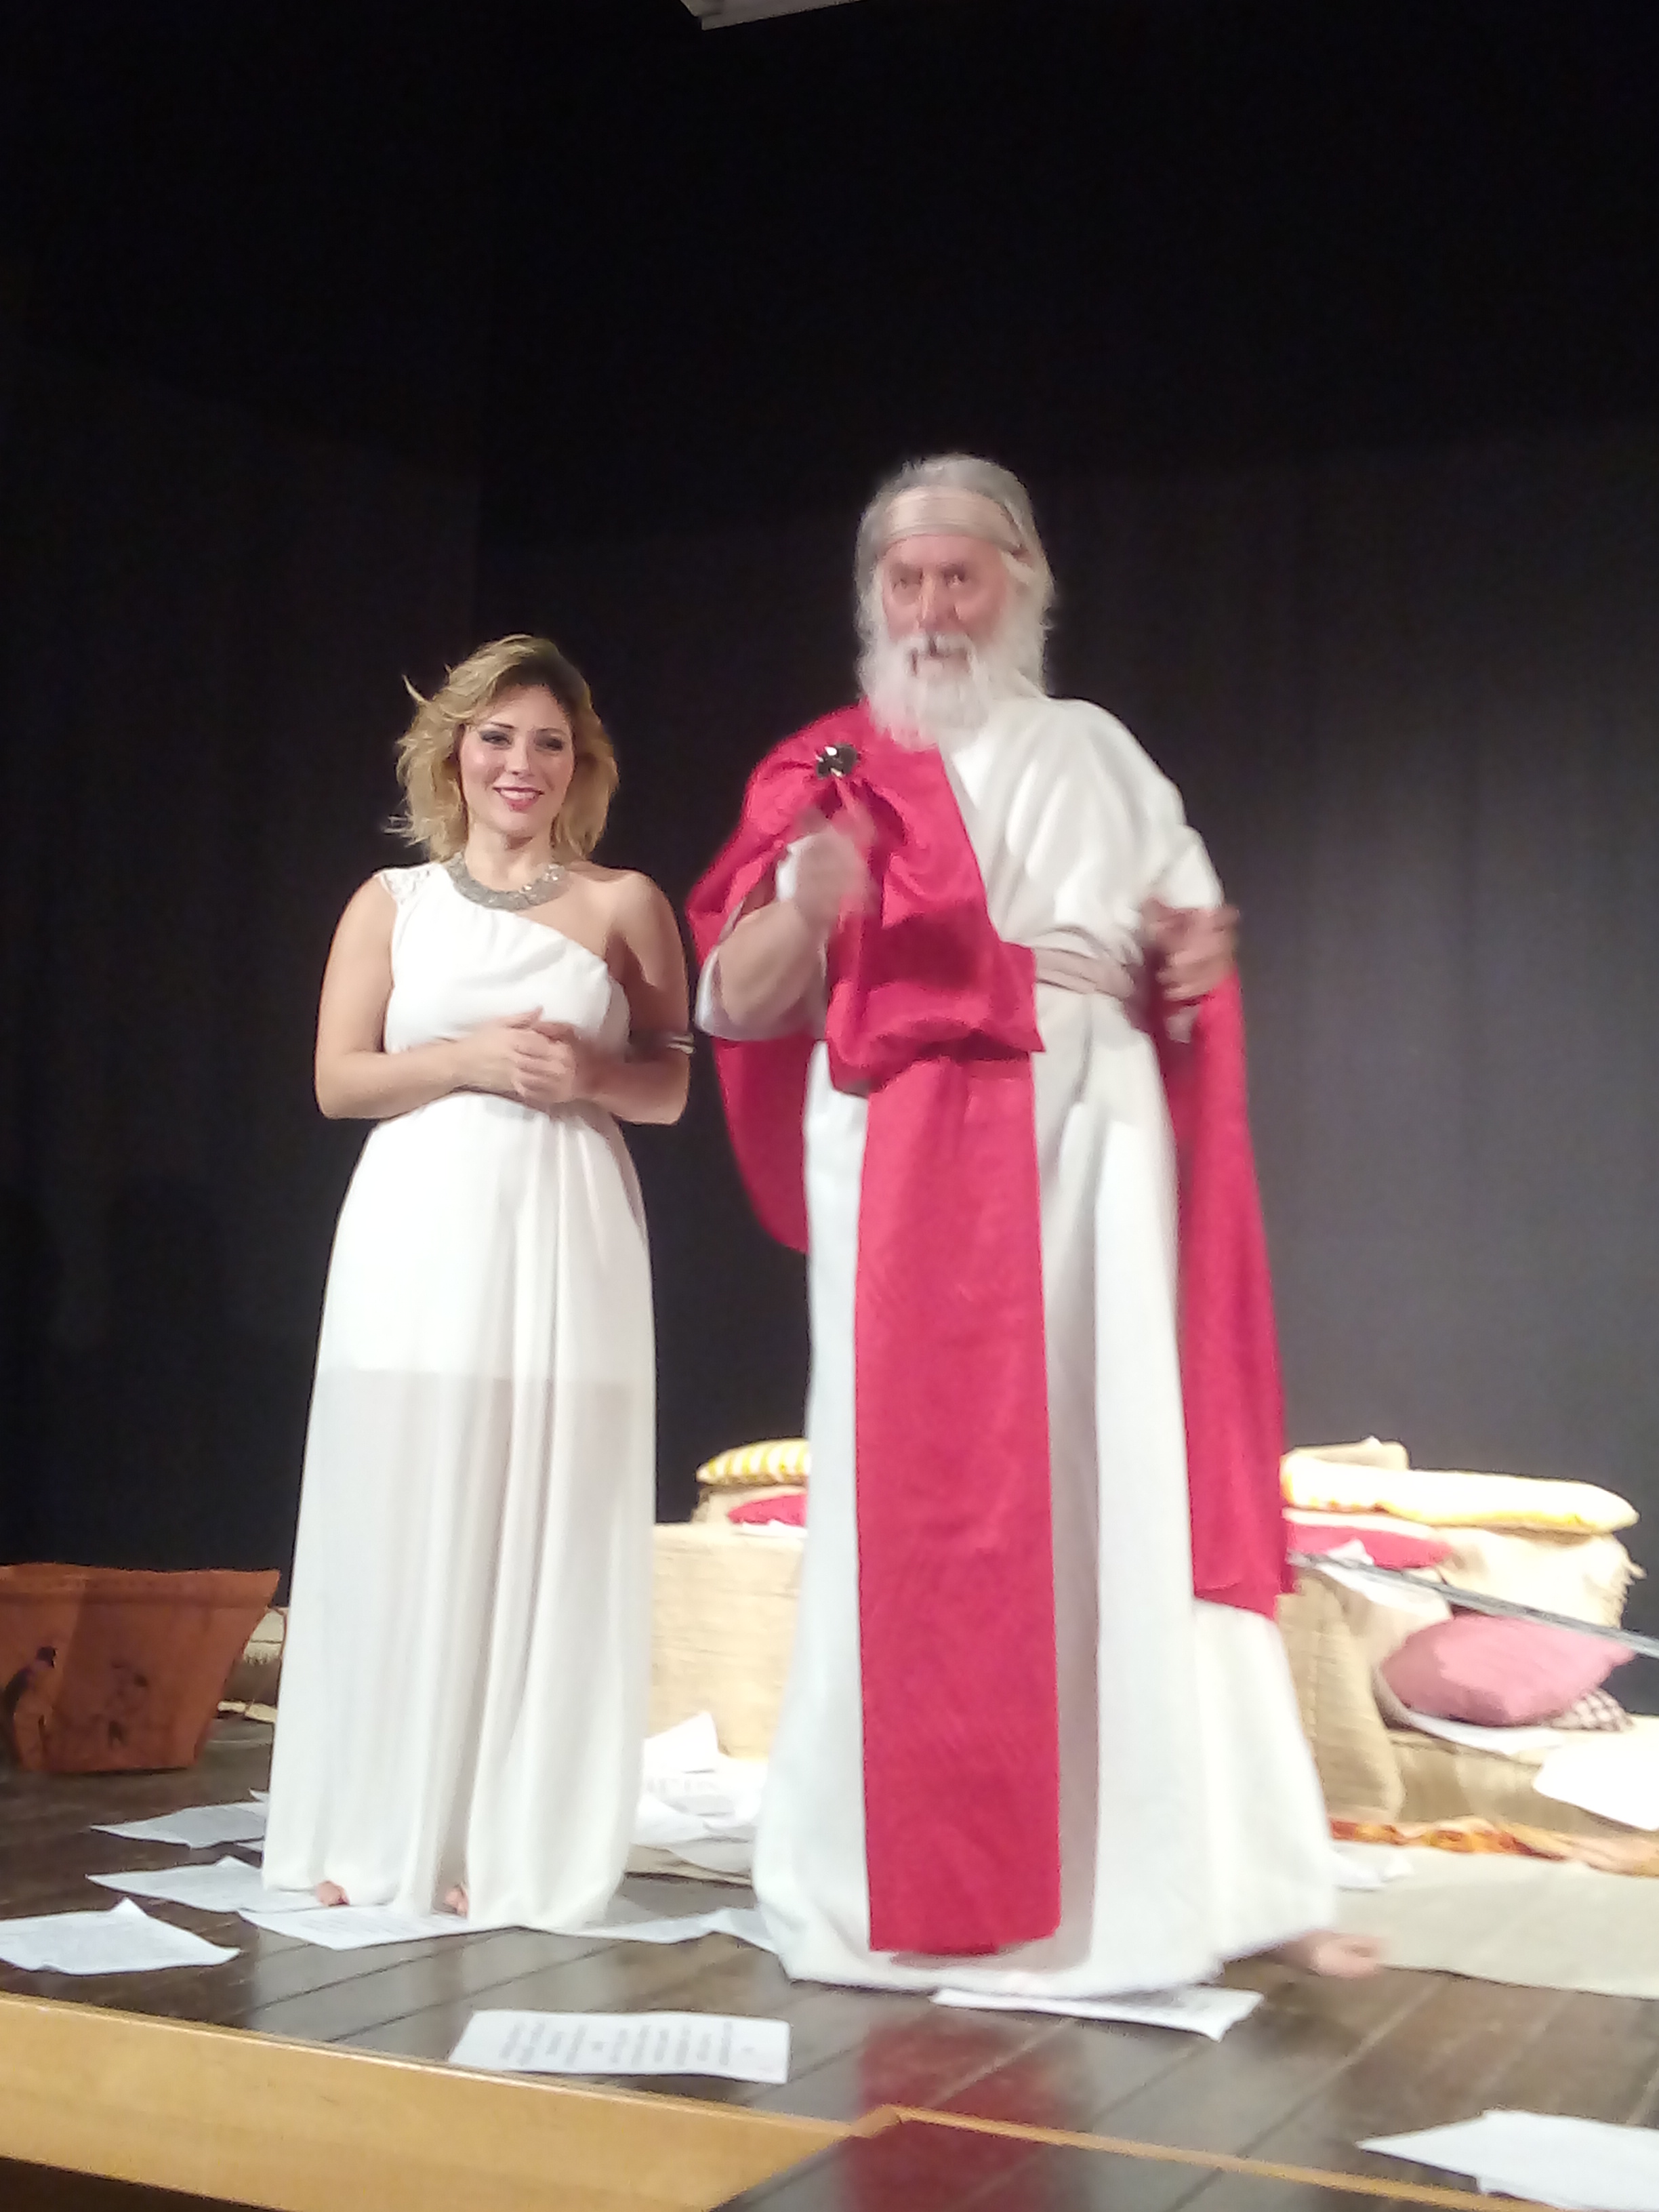 Barcellona PG. Giuseppe Messina, Rosemary Calderone e Laura Paone in scena al Liceo Classico “Valli”